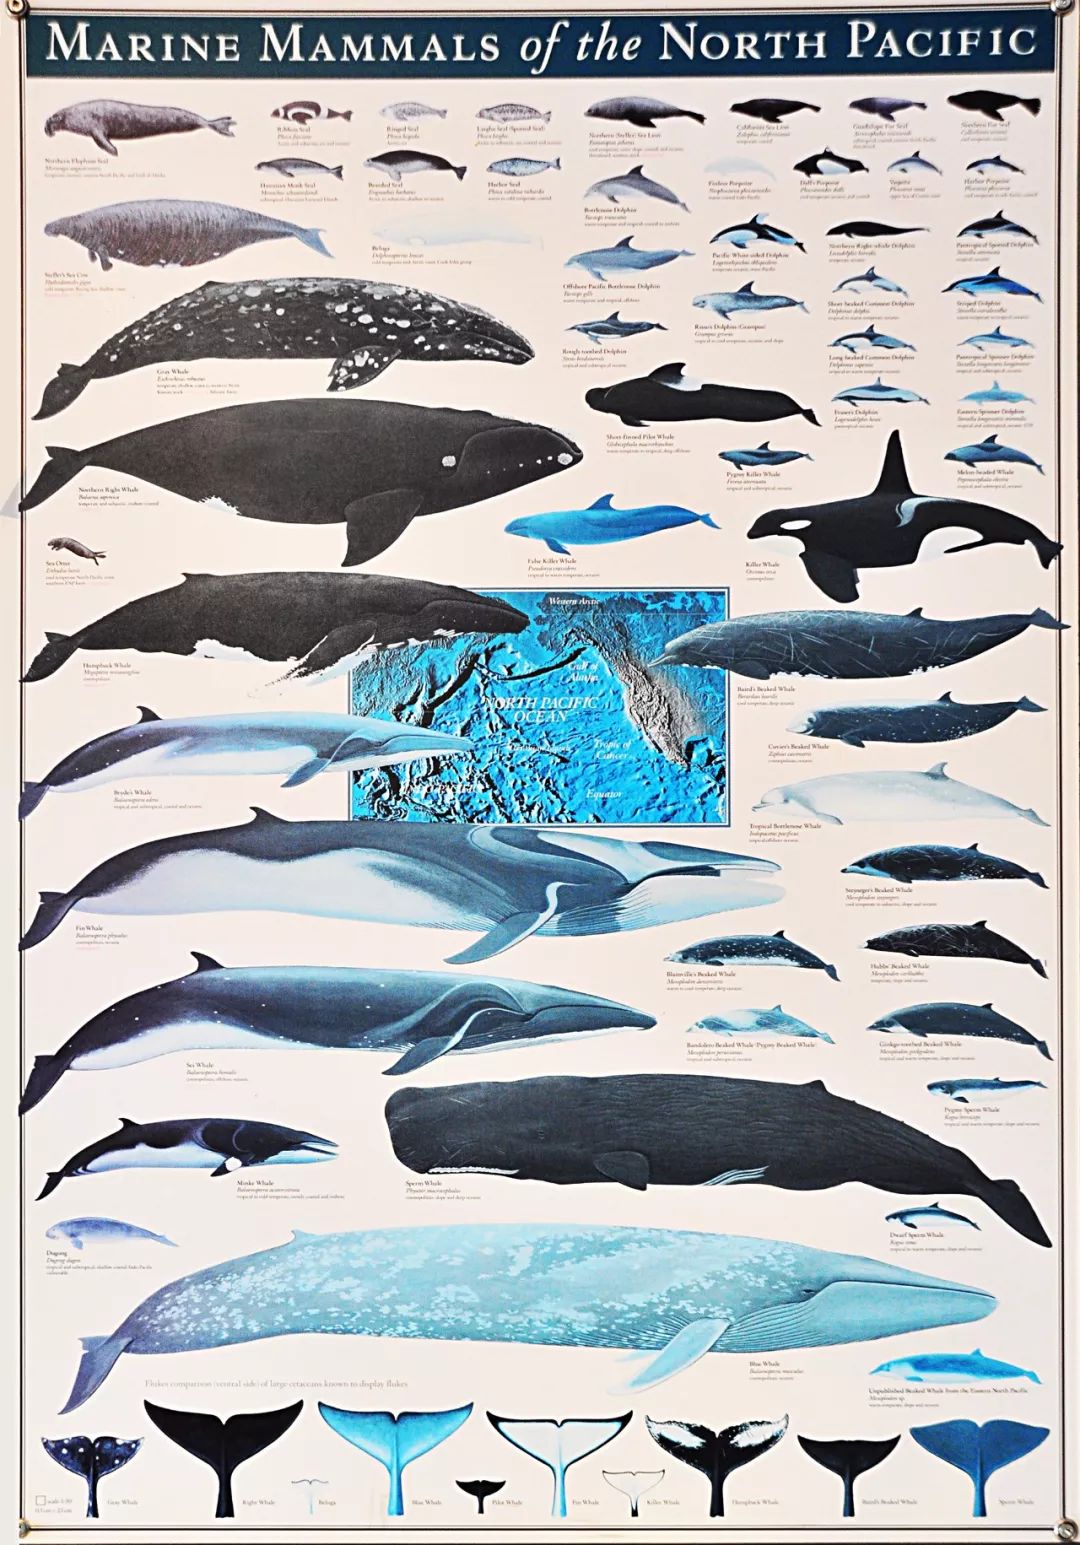 当你在维多利亚鲸鱼公司的大厅里,看到这张"北太平洋海洋哺乳动物图鉴